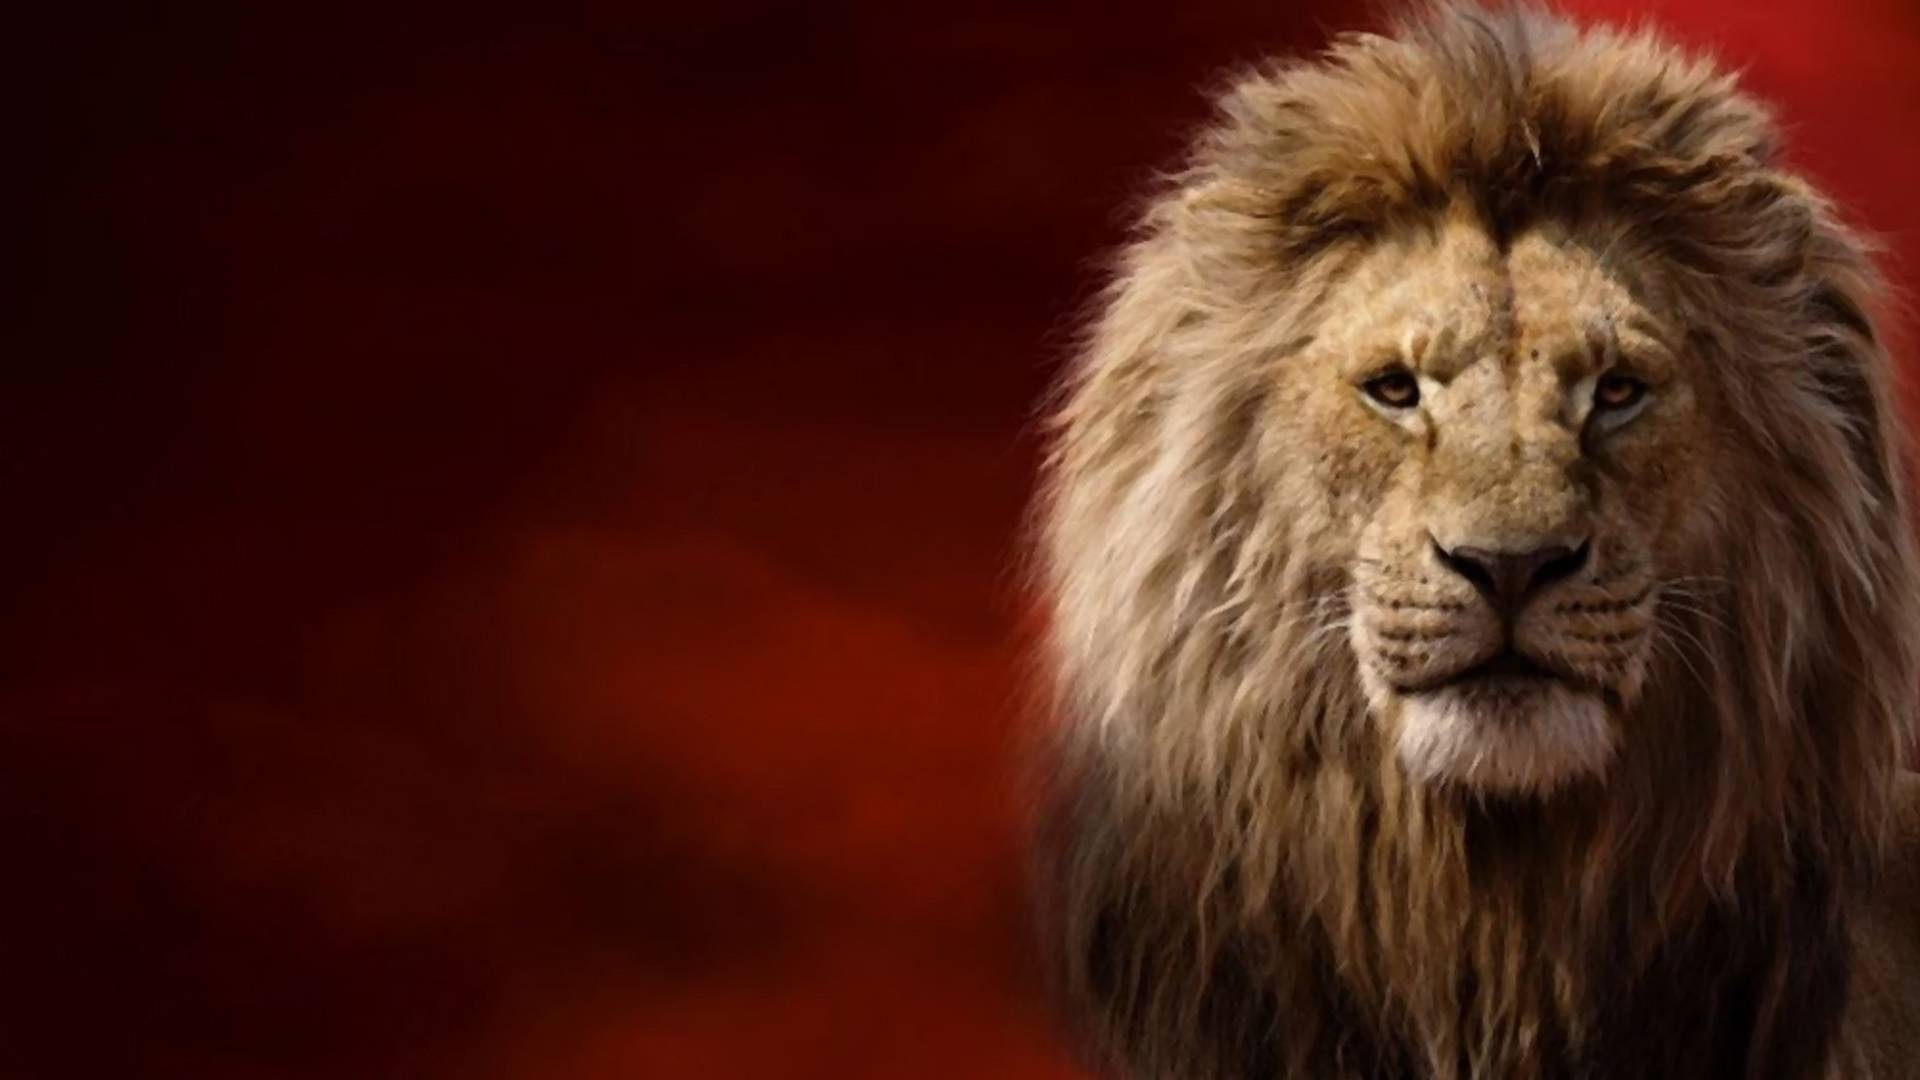 Realizm zabił królestwo - recenzja "Króla Lwa"